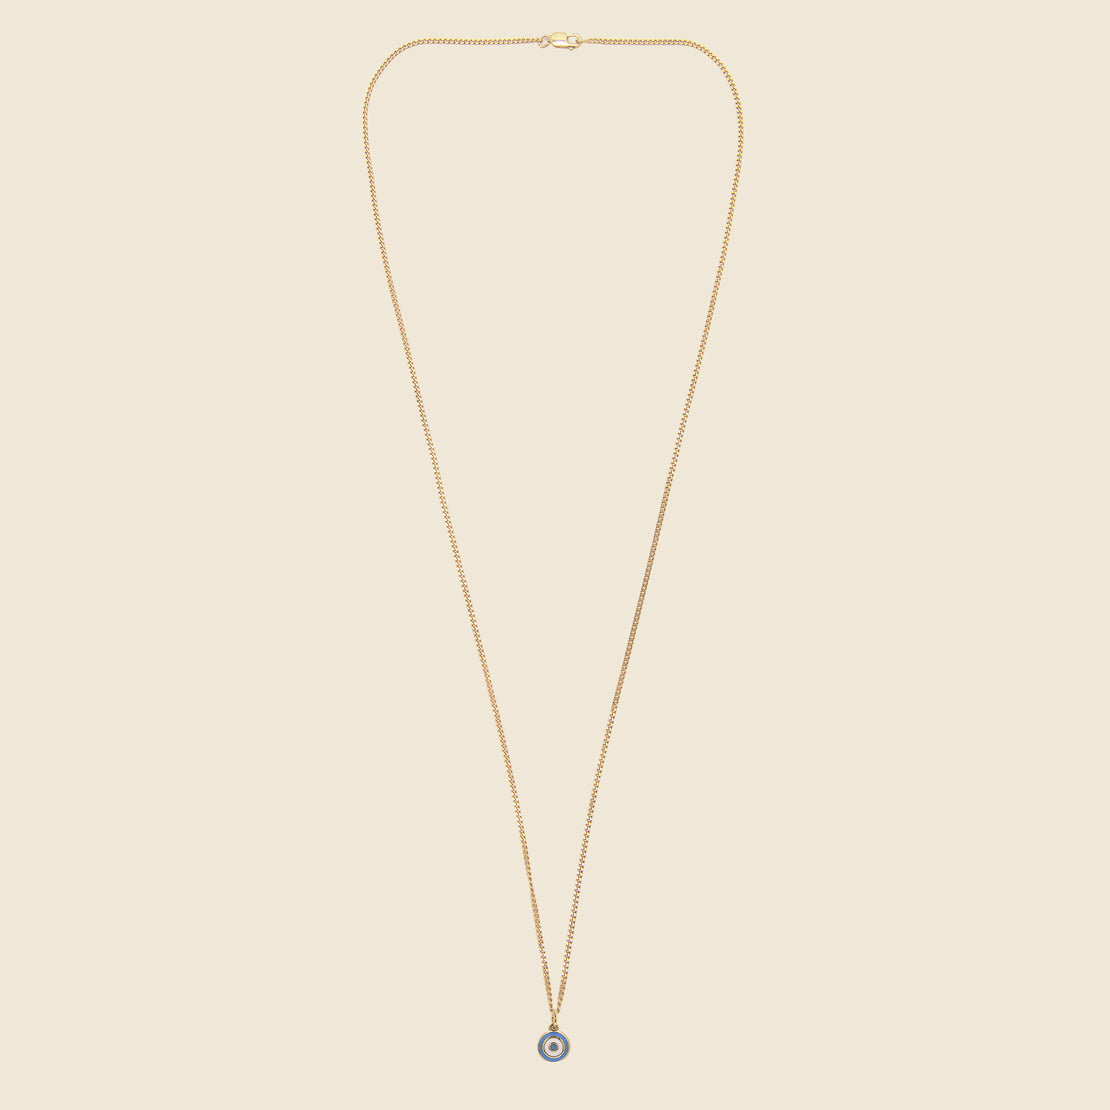 Ojos Pendant - Gold Vermeil/Sky Blue Enamel - Miansai - STAG Provisions - Accessories - Necklaces